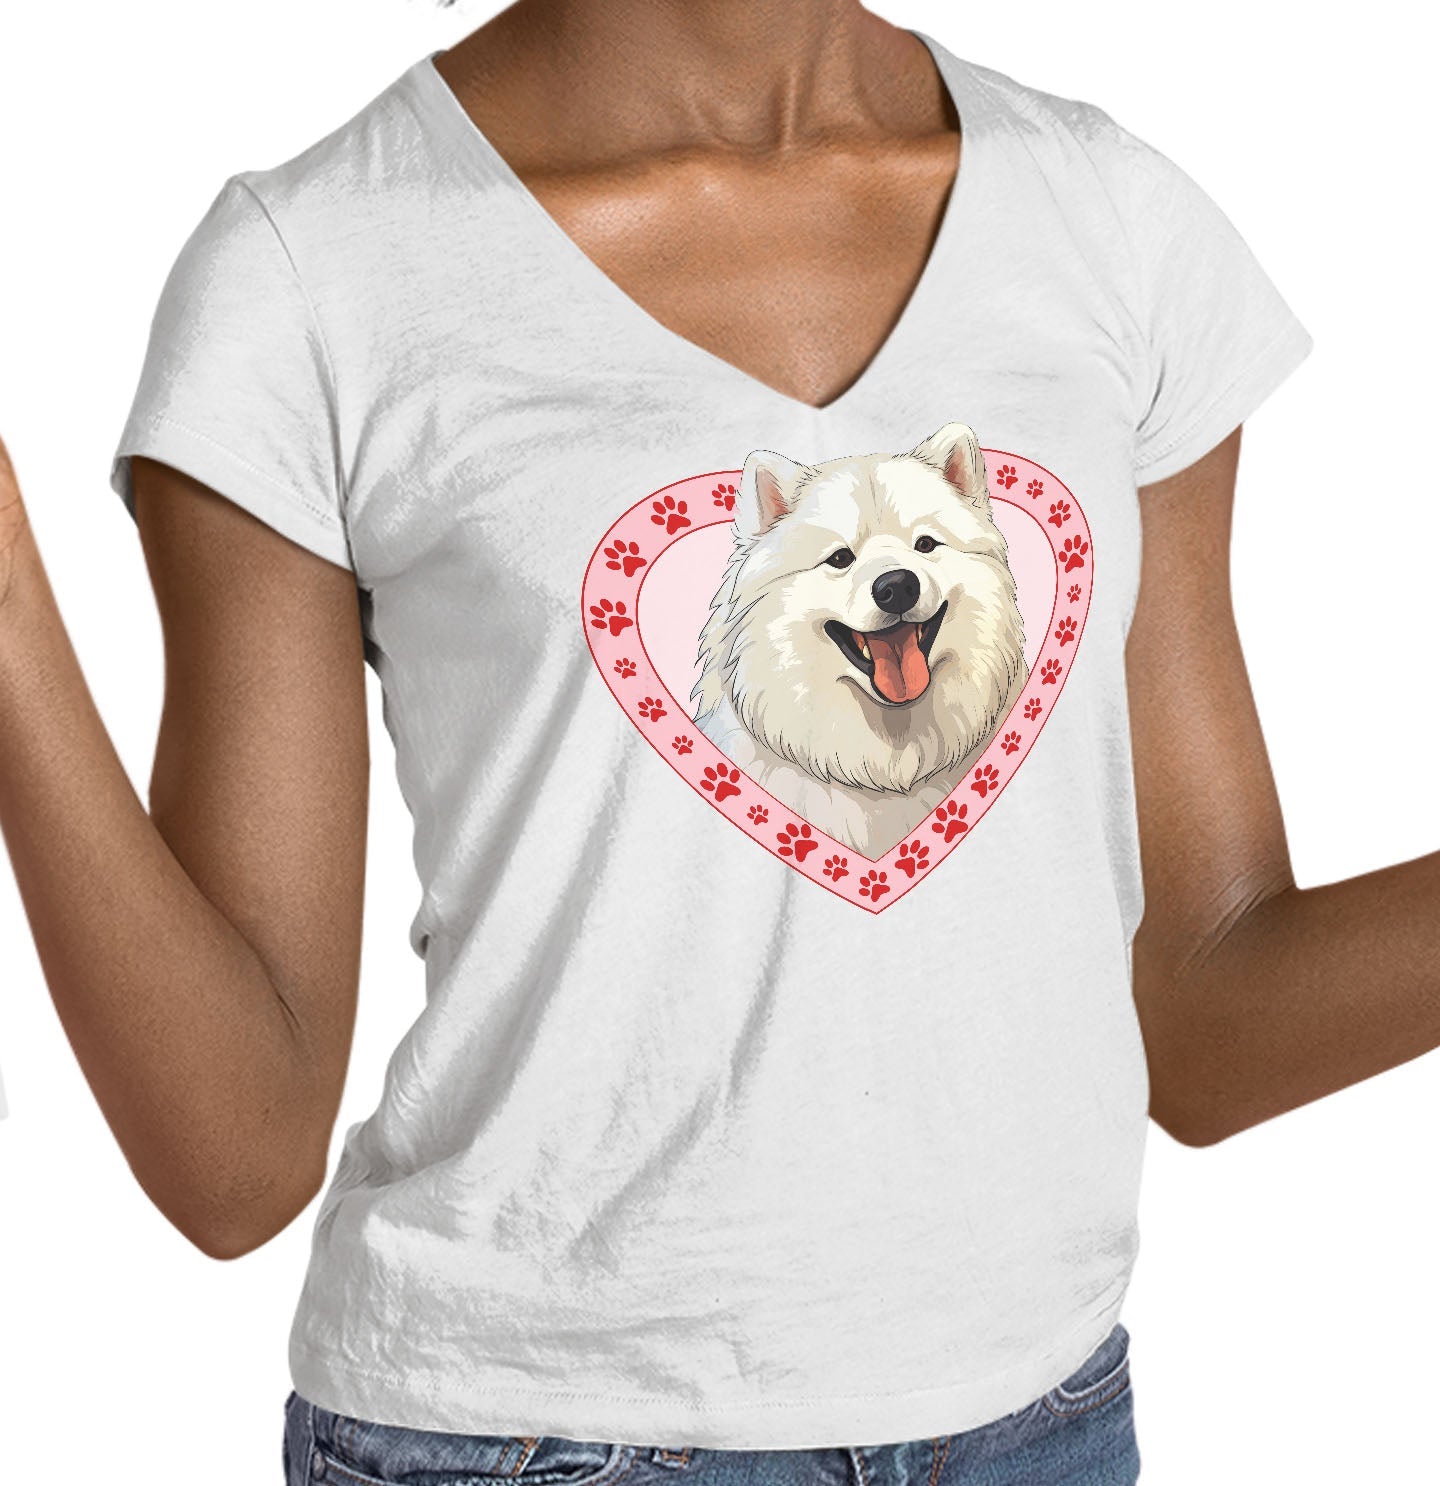 Samoyed Illustration In Heart - Women's V-Neck T-Shirt